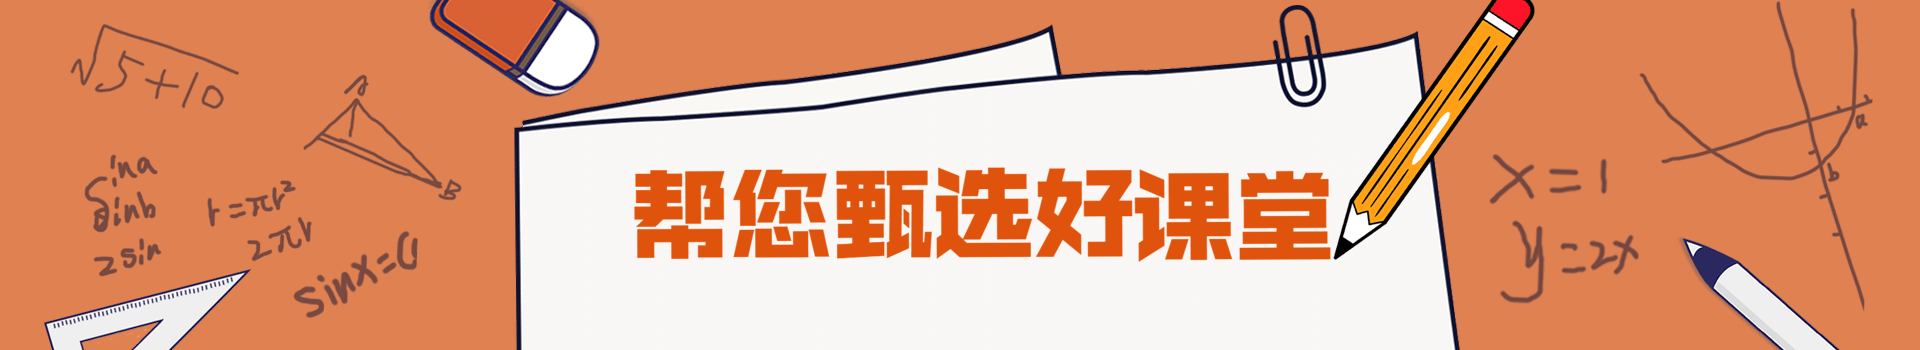 北京学烧仙草技术培训班